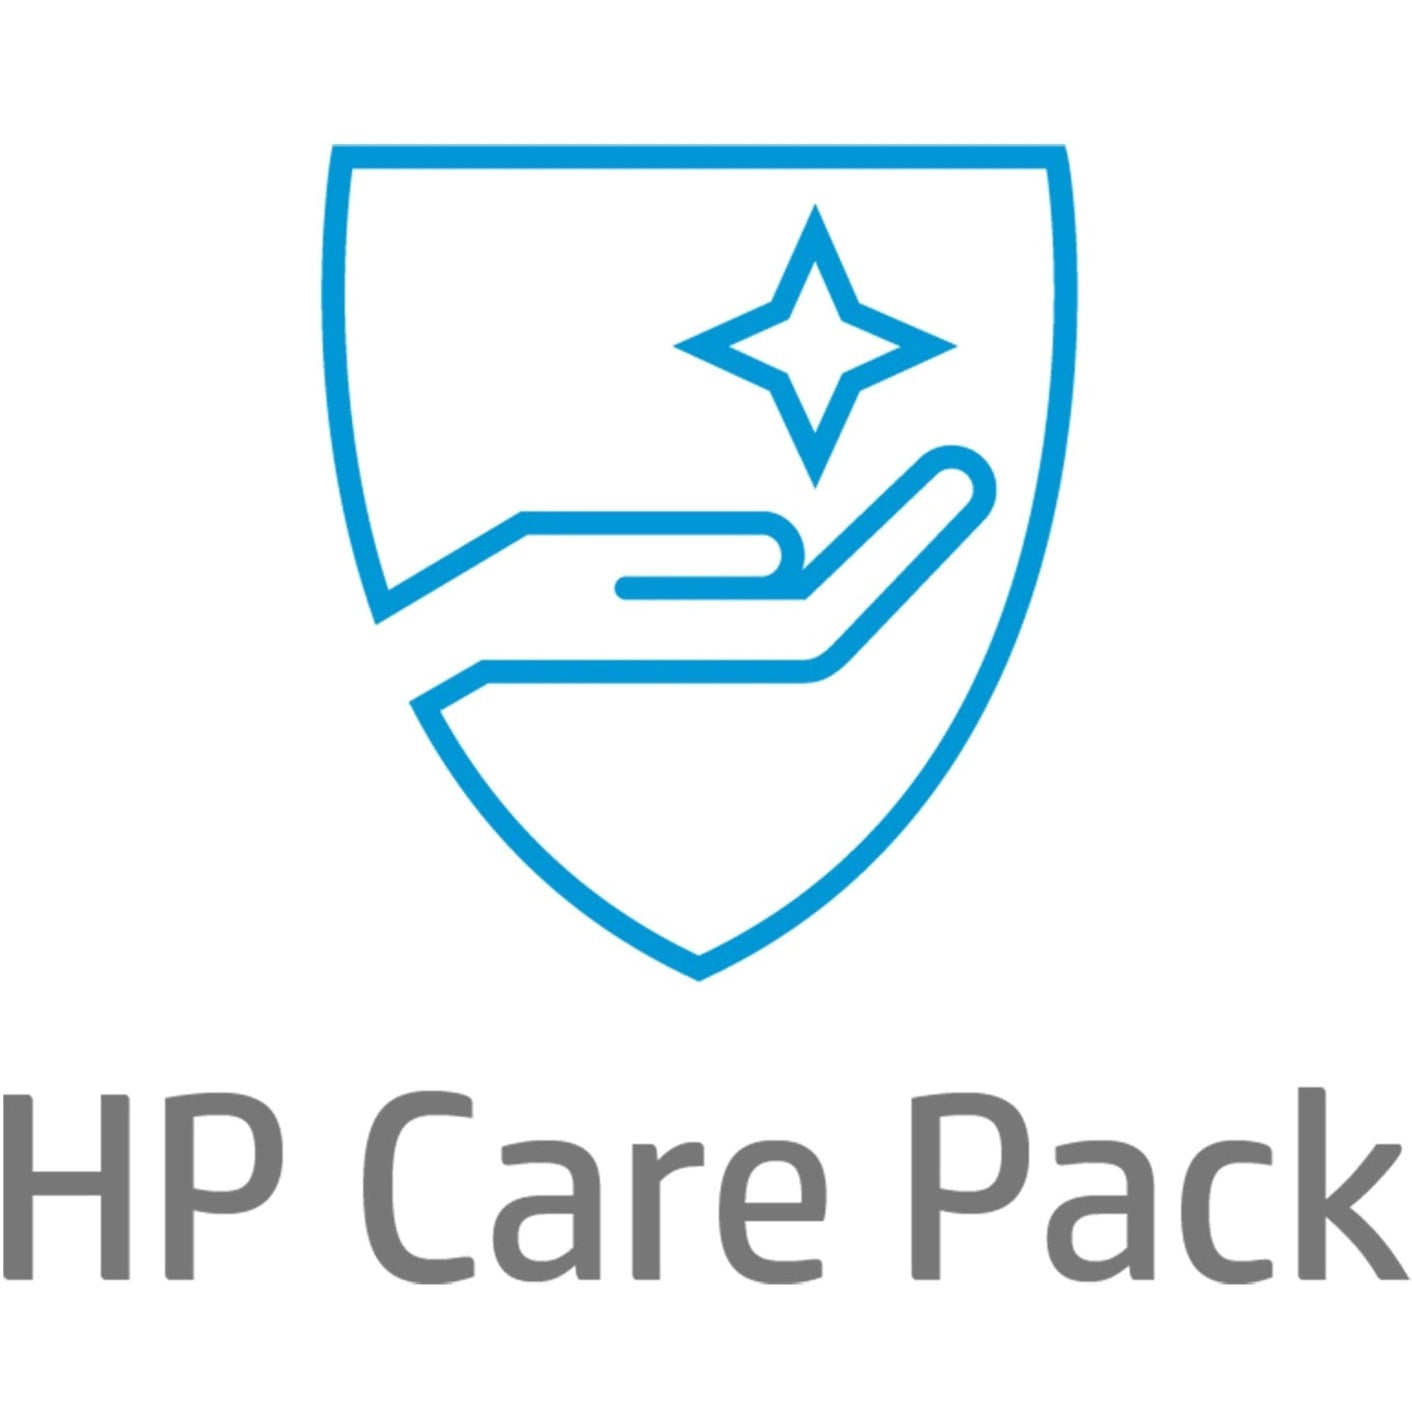 HP Care Pack - Data Recovery & Restore Service - 3 Year - Service (U9AN7E)